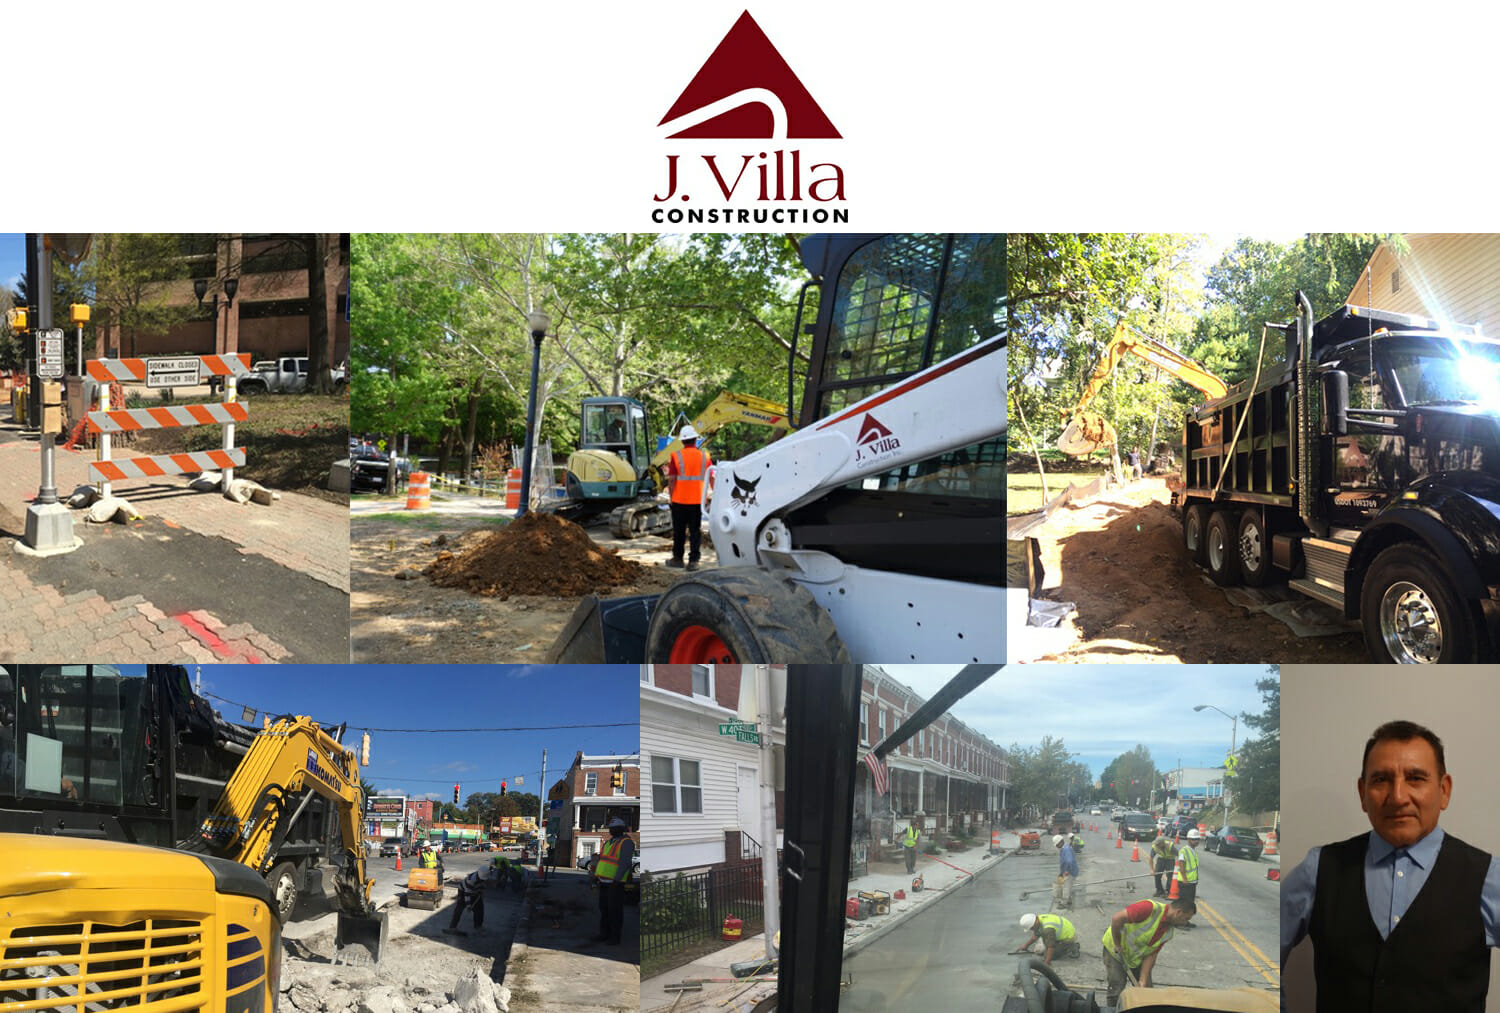 J. Villa Construction